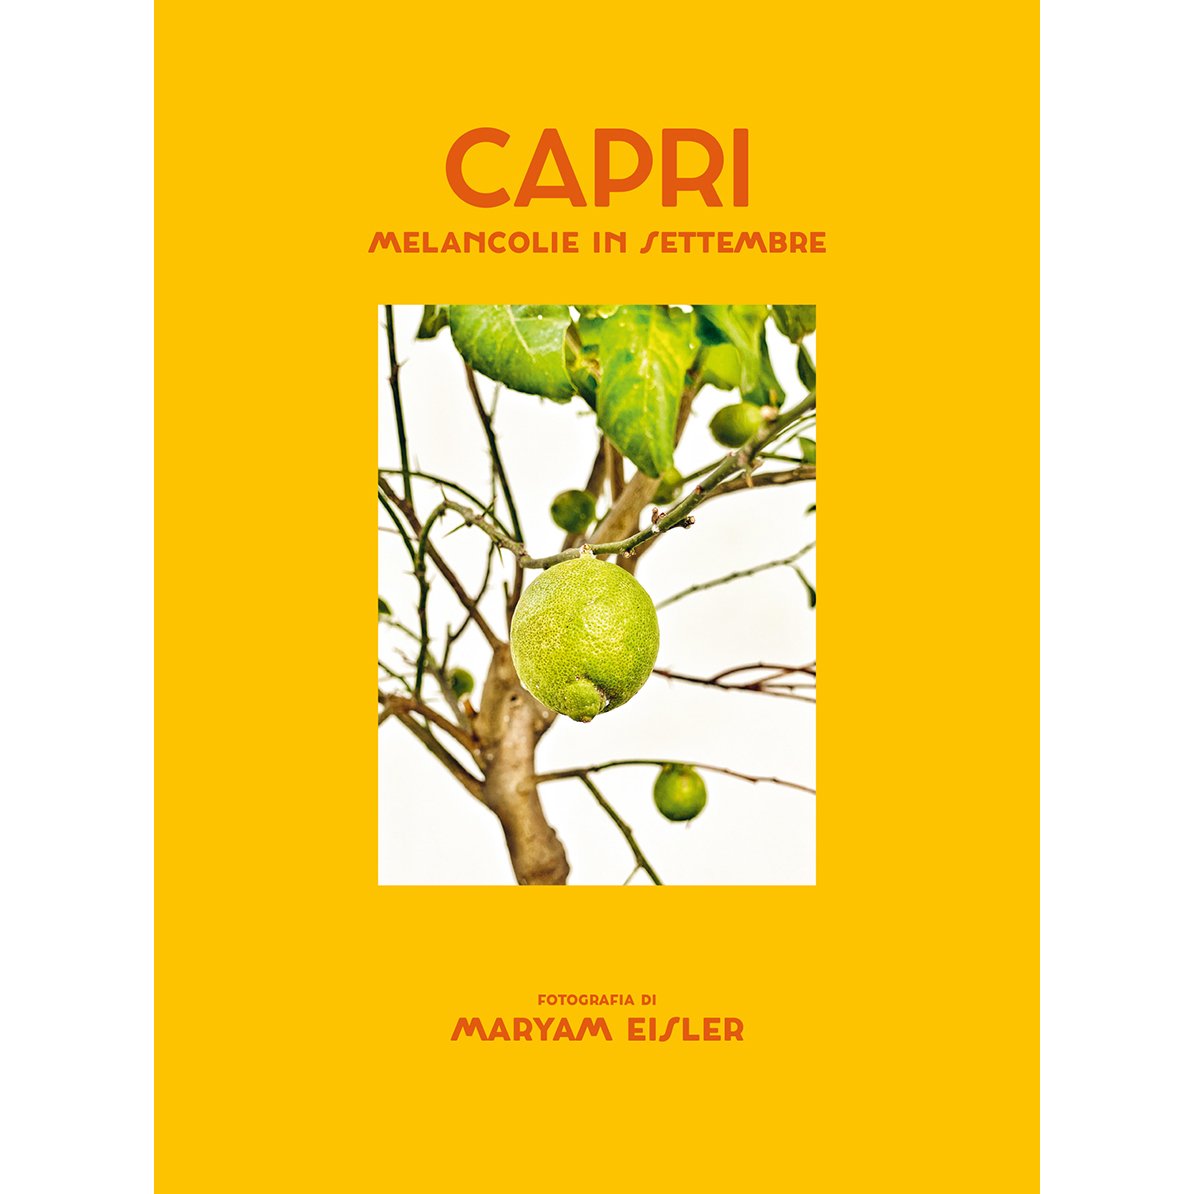 Capri_book0.jpg